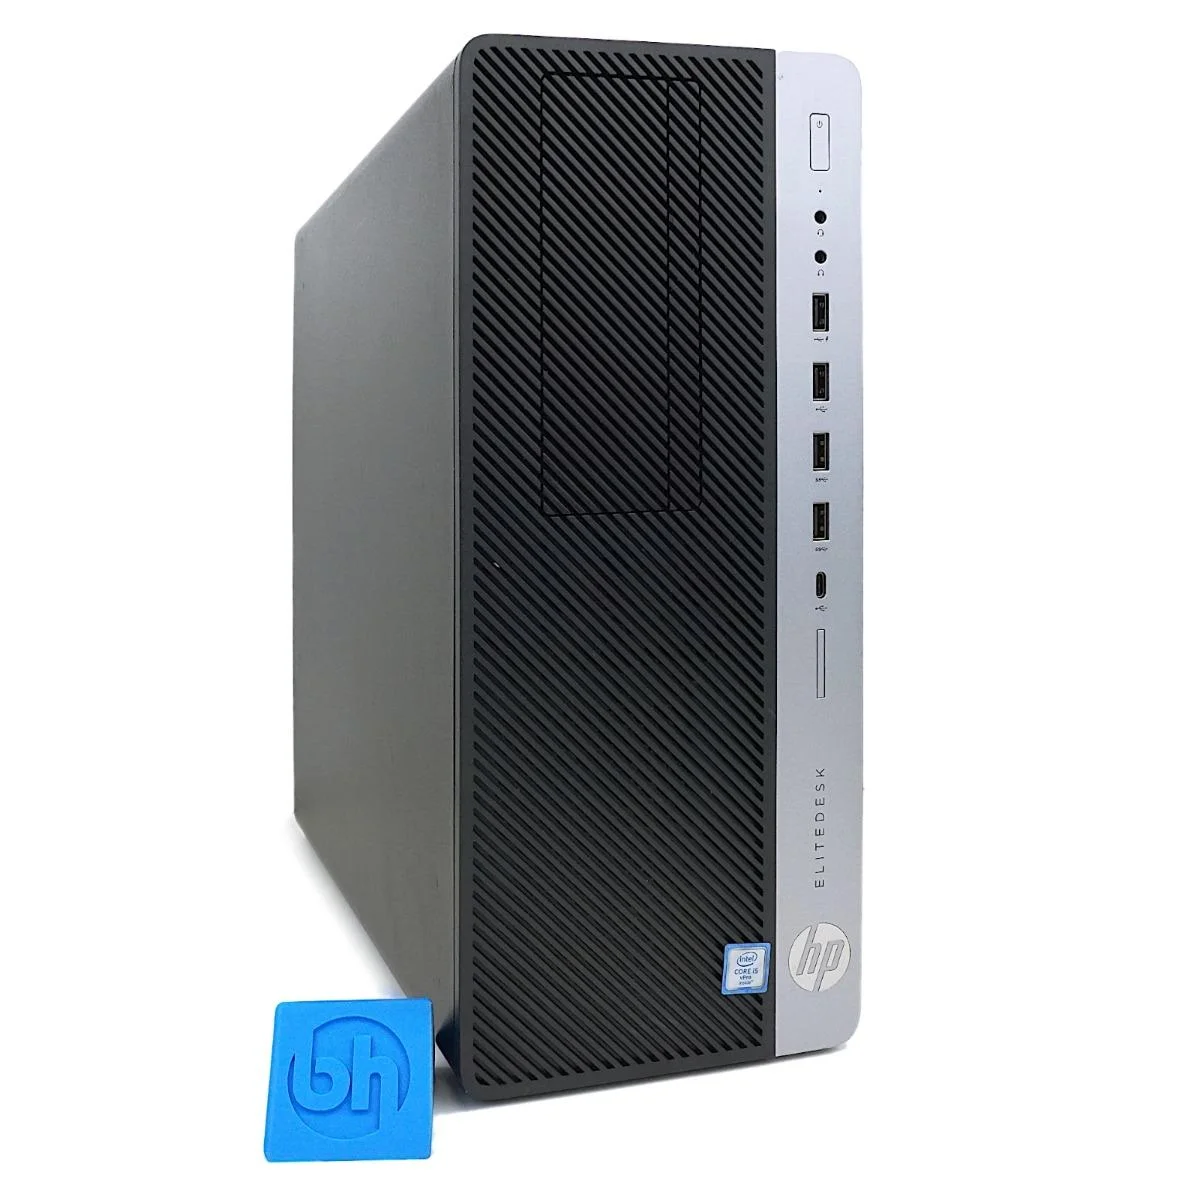 HP EliteDesk 800 G3 Tower Desktop PC